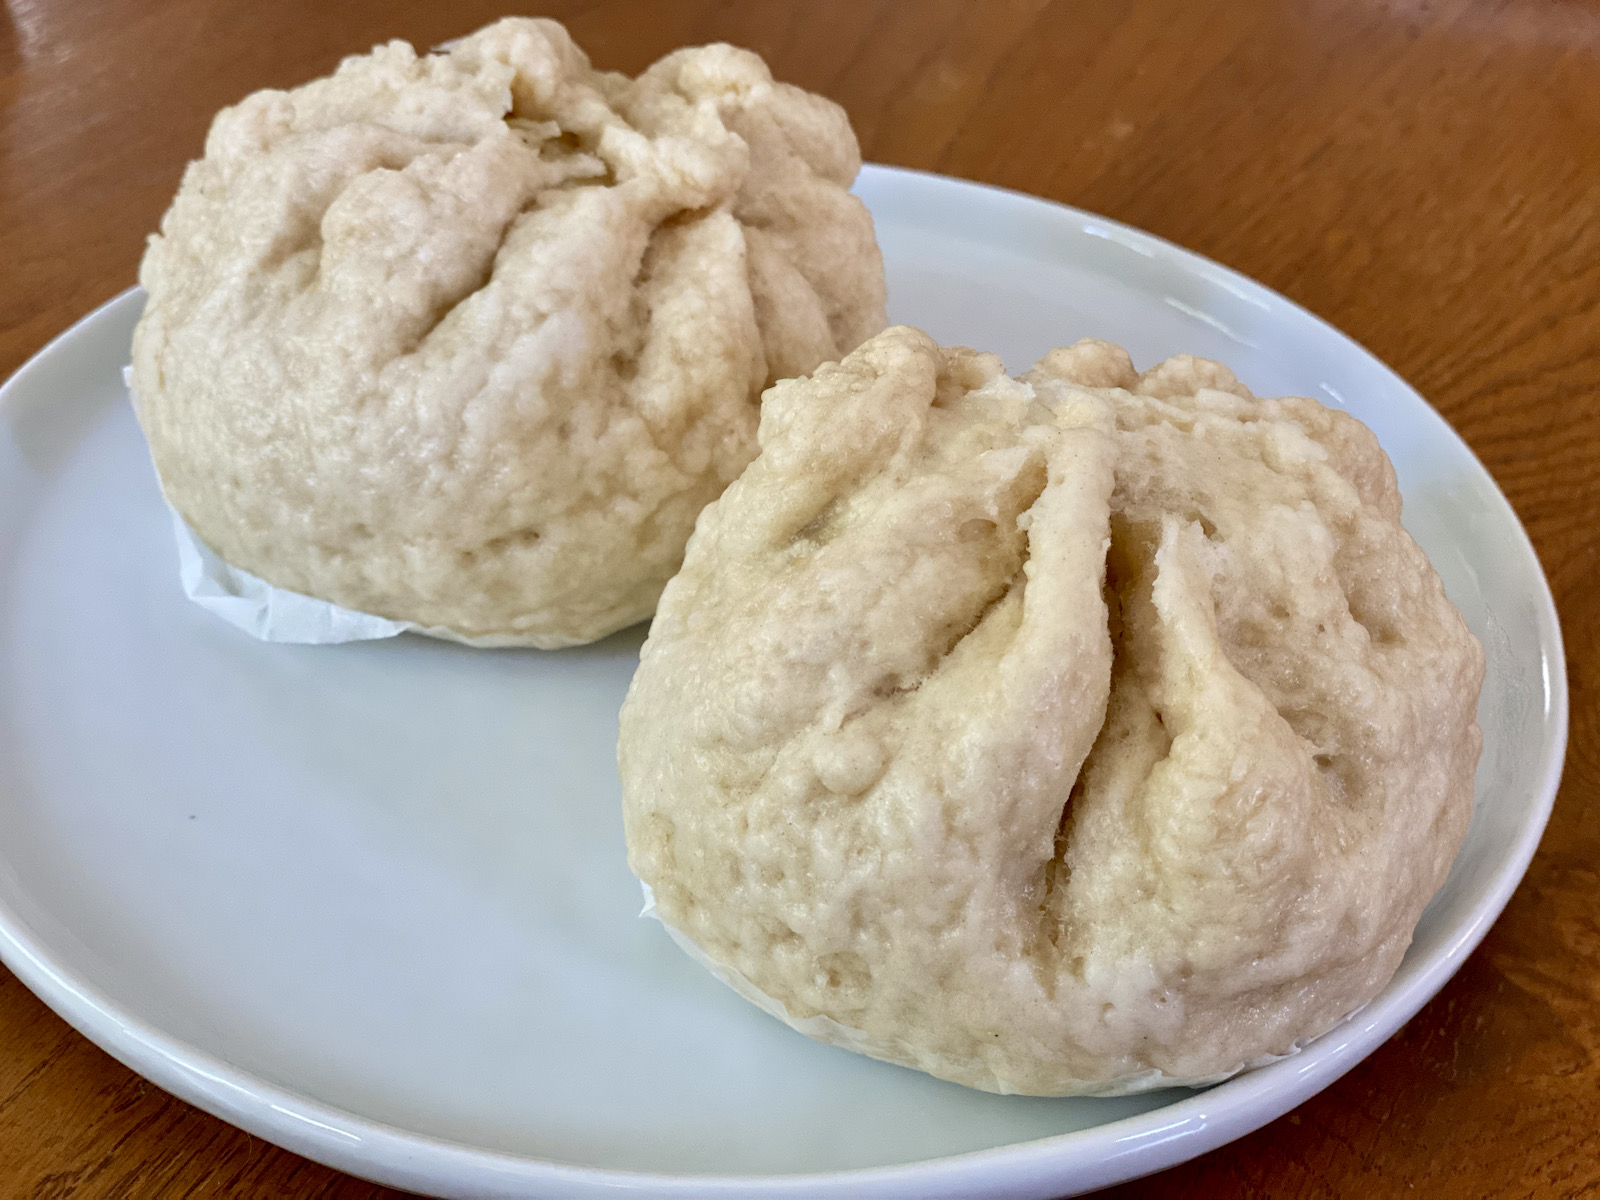 Pork salapao (steamed buns)